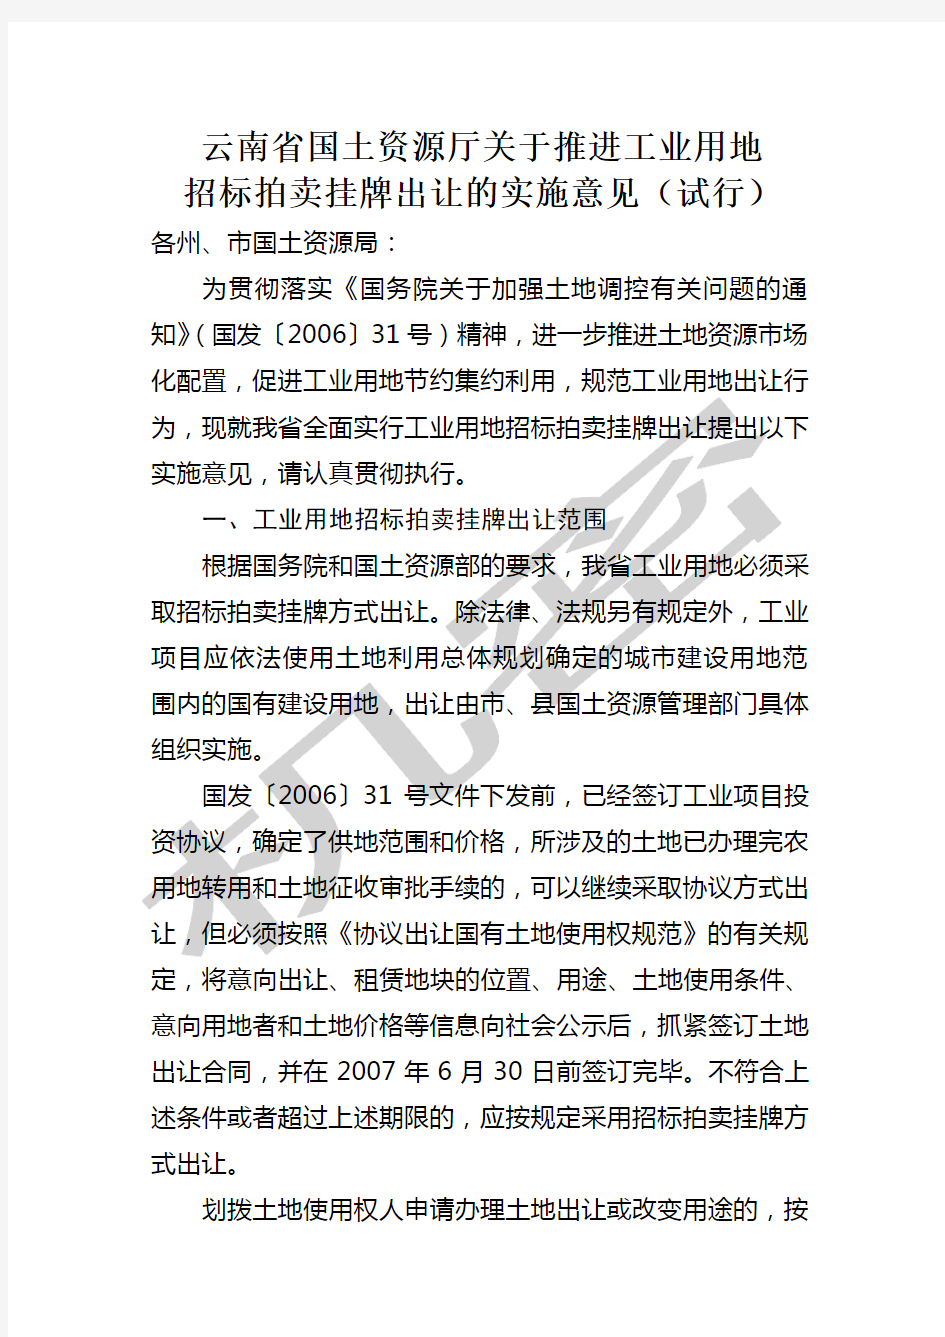 云南省国土资源厅推进工业用地招标拍卖挂牌出让的实施意见试行